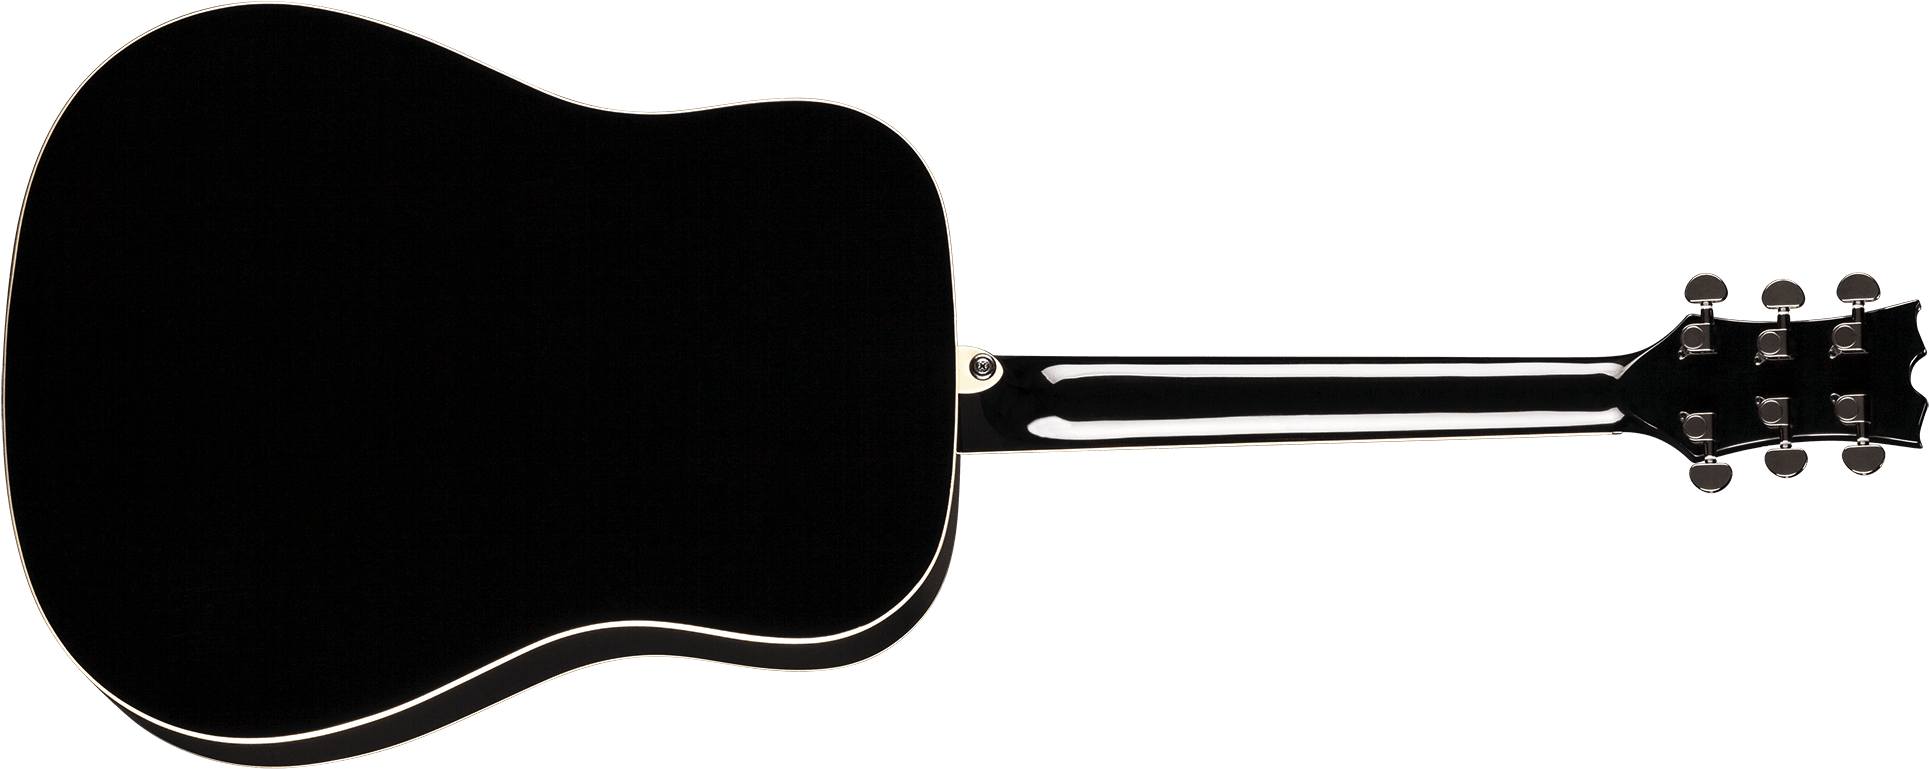 Dean Guitars Image - Acoustic Guitar (2000x840)